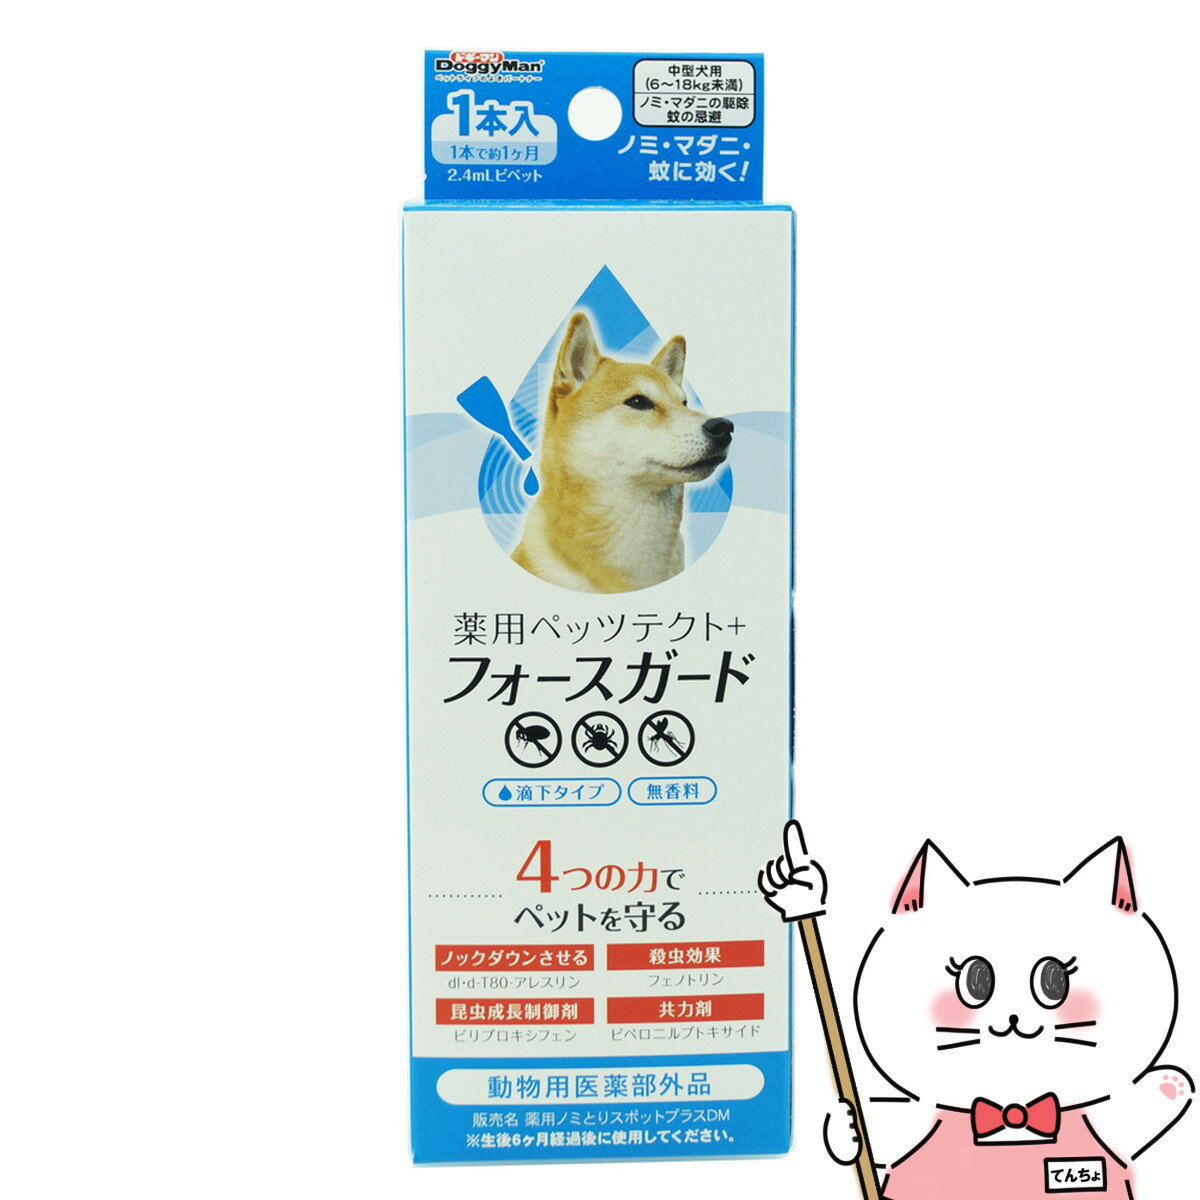 ドギーマン 薬用ペッツテクト+フォースガード 中型犬用 1本入【happiest】【SBT】(6040810)